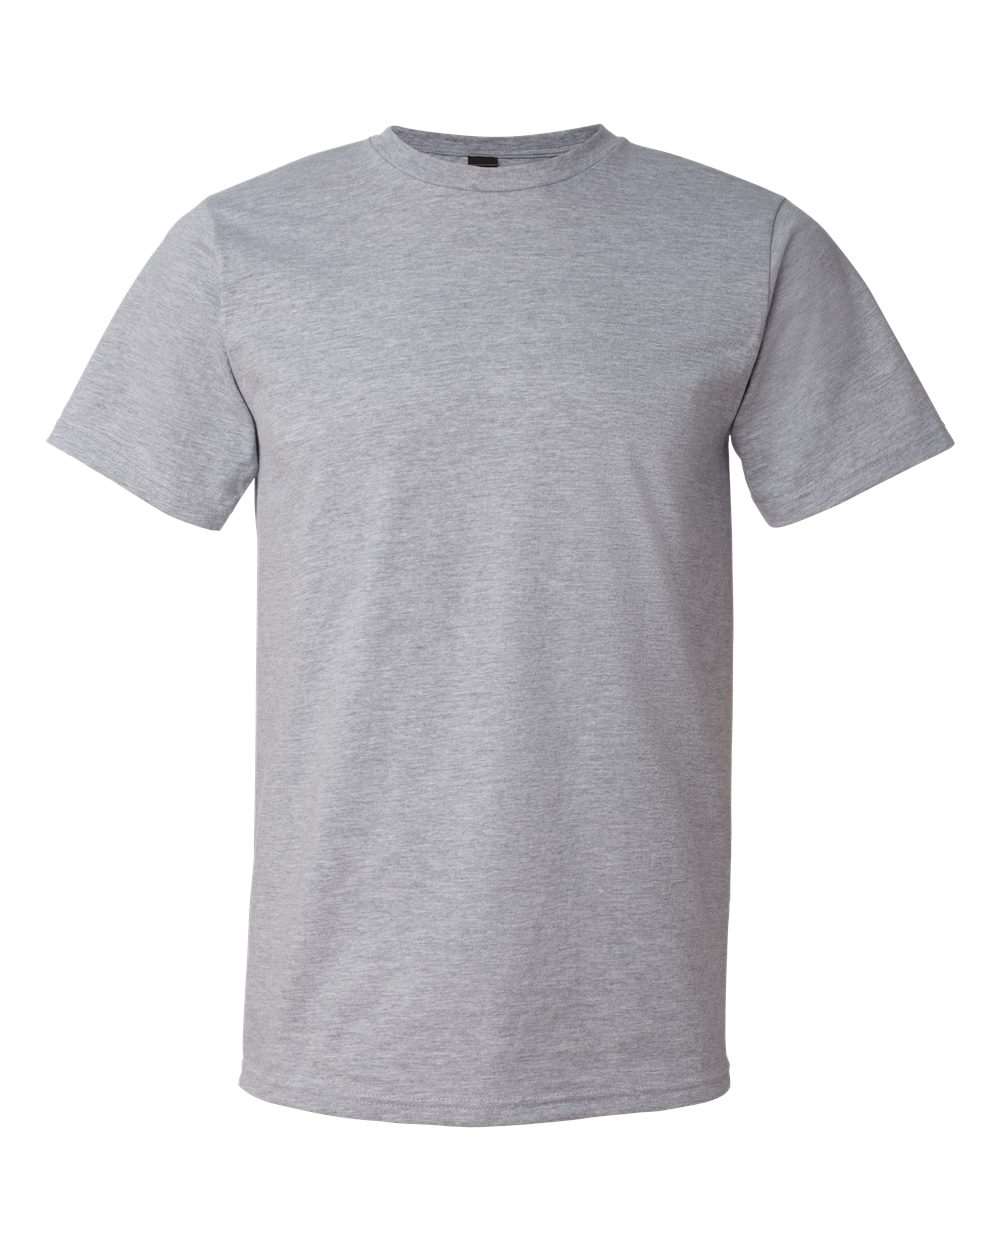 Gildan - Softstyle® Lightweight T-Shirt - 980